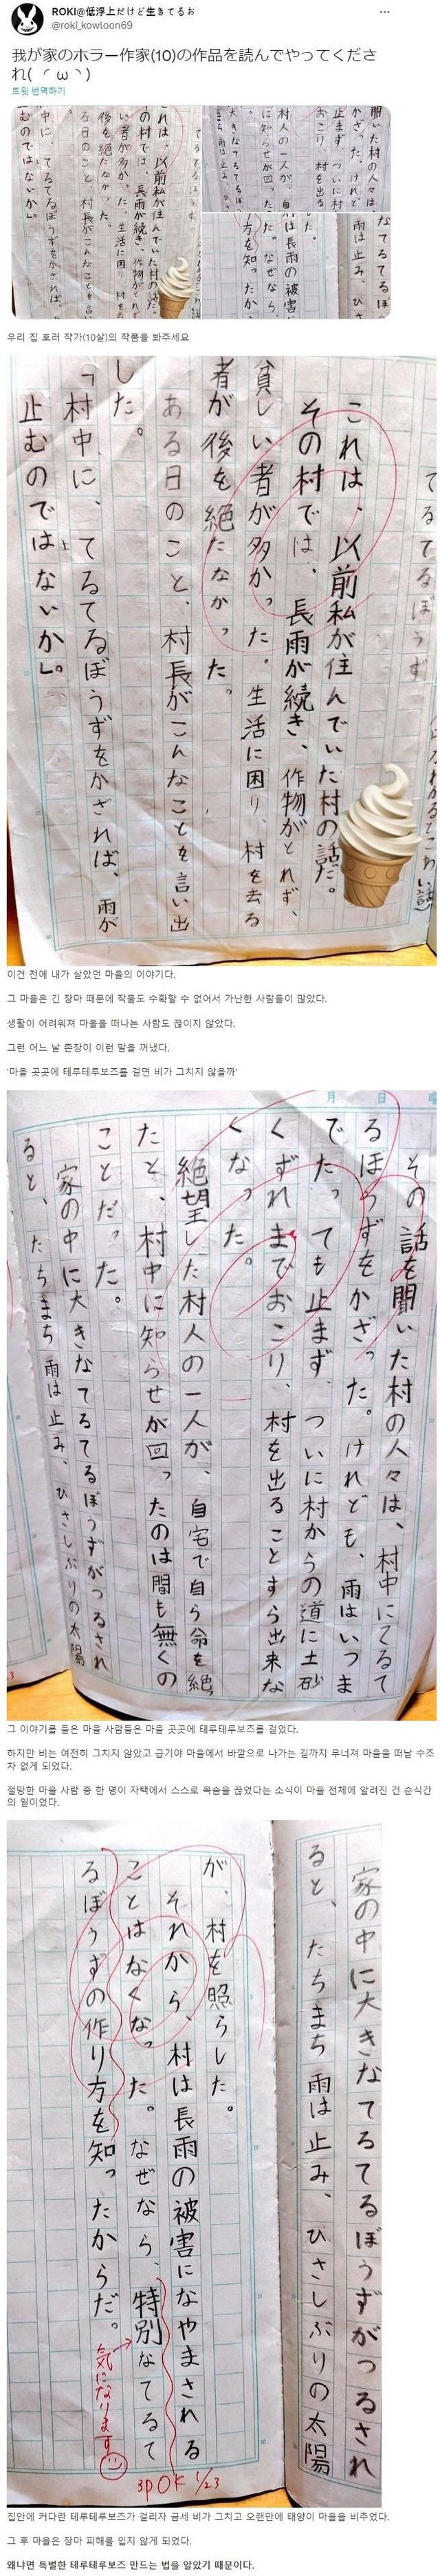 일본 10살 꼬마가 쓴 호러 소설